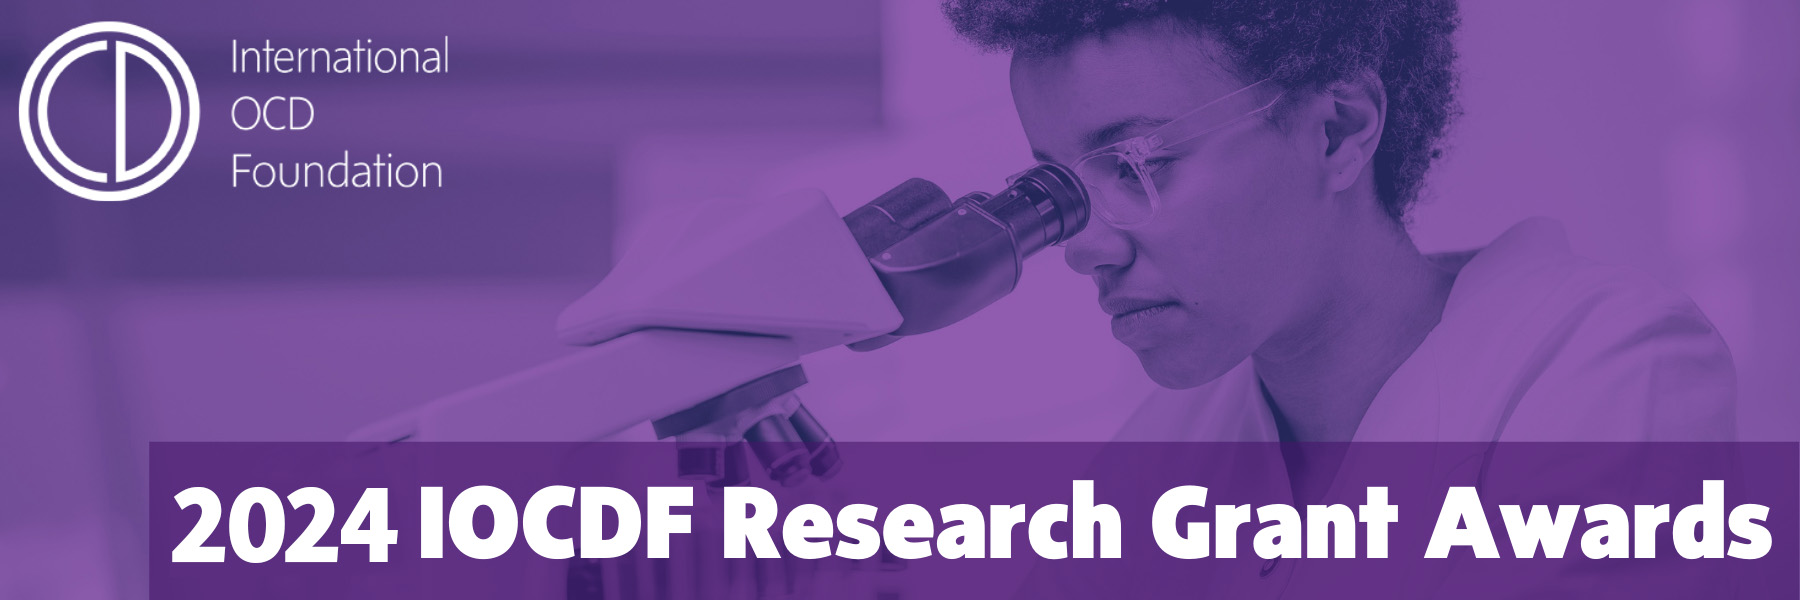 IOCDF OCD Research Header